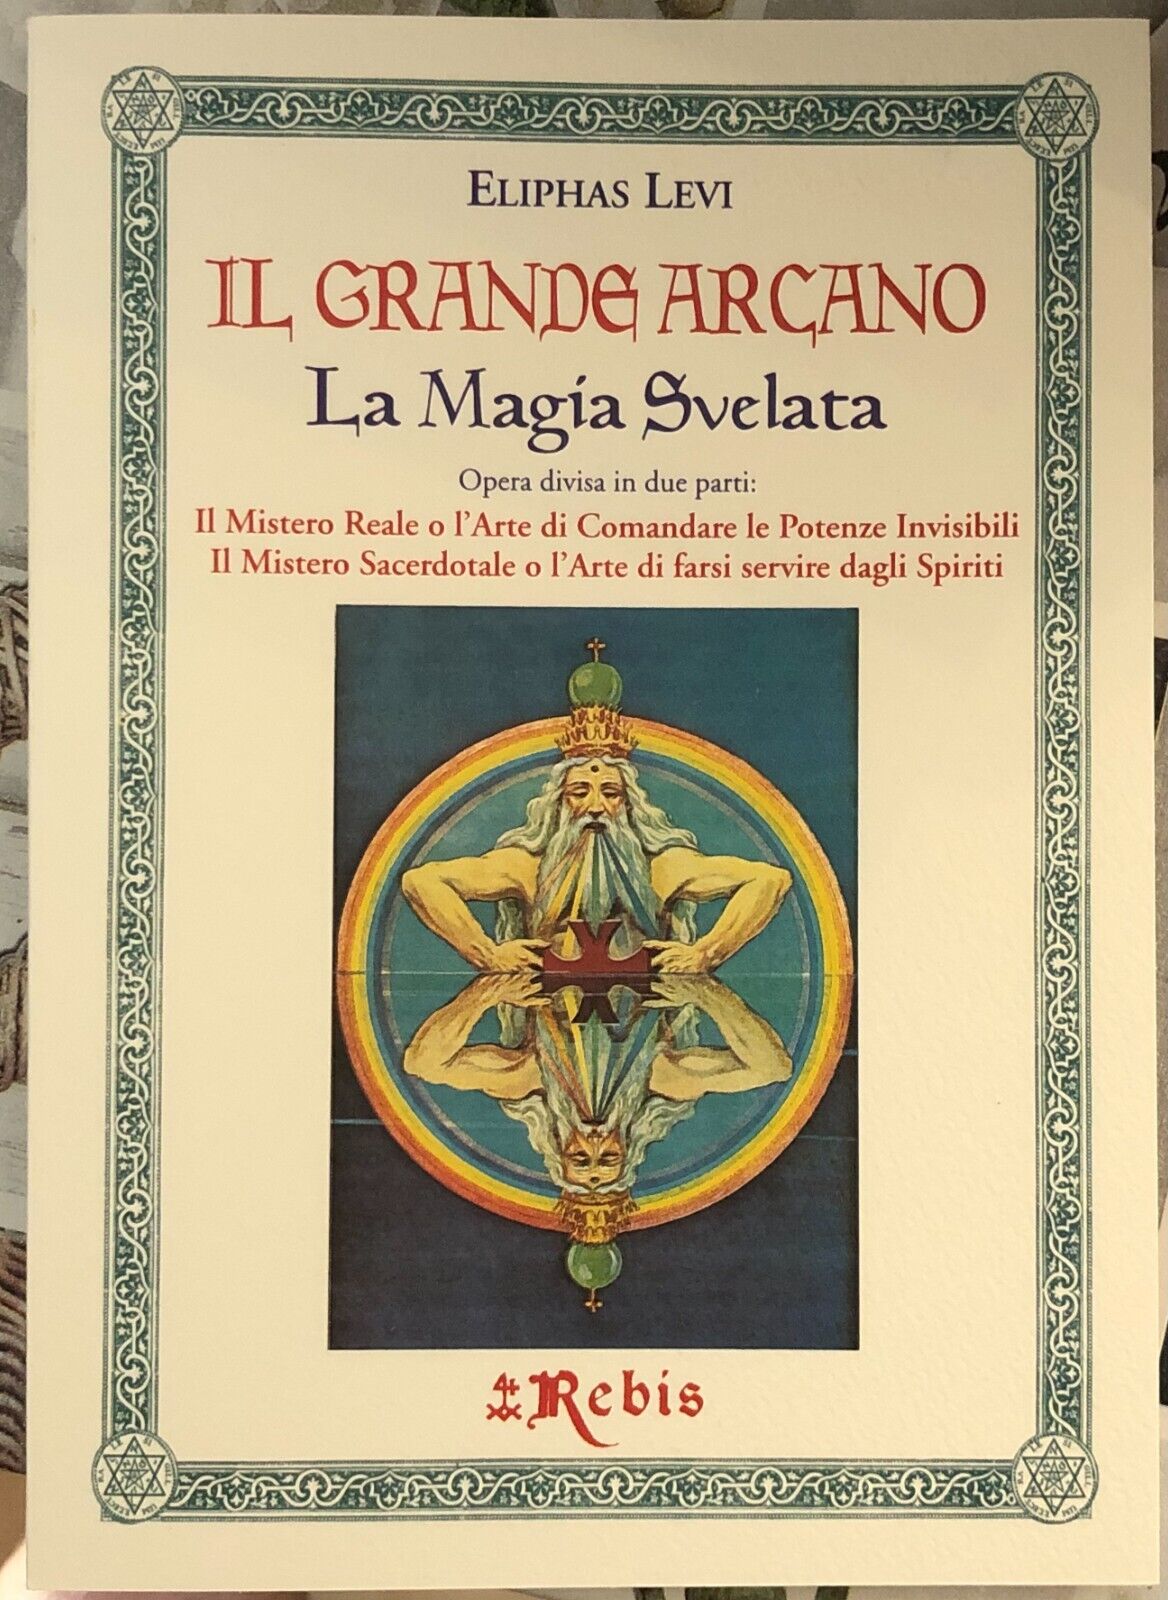  Il Grande Arcano - La Magia Svelata. Il Mistero Reale o L'Arte di Comandare le 